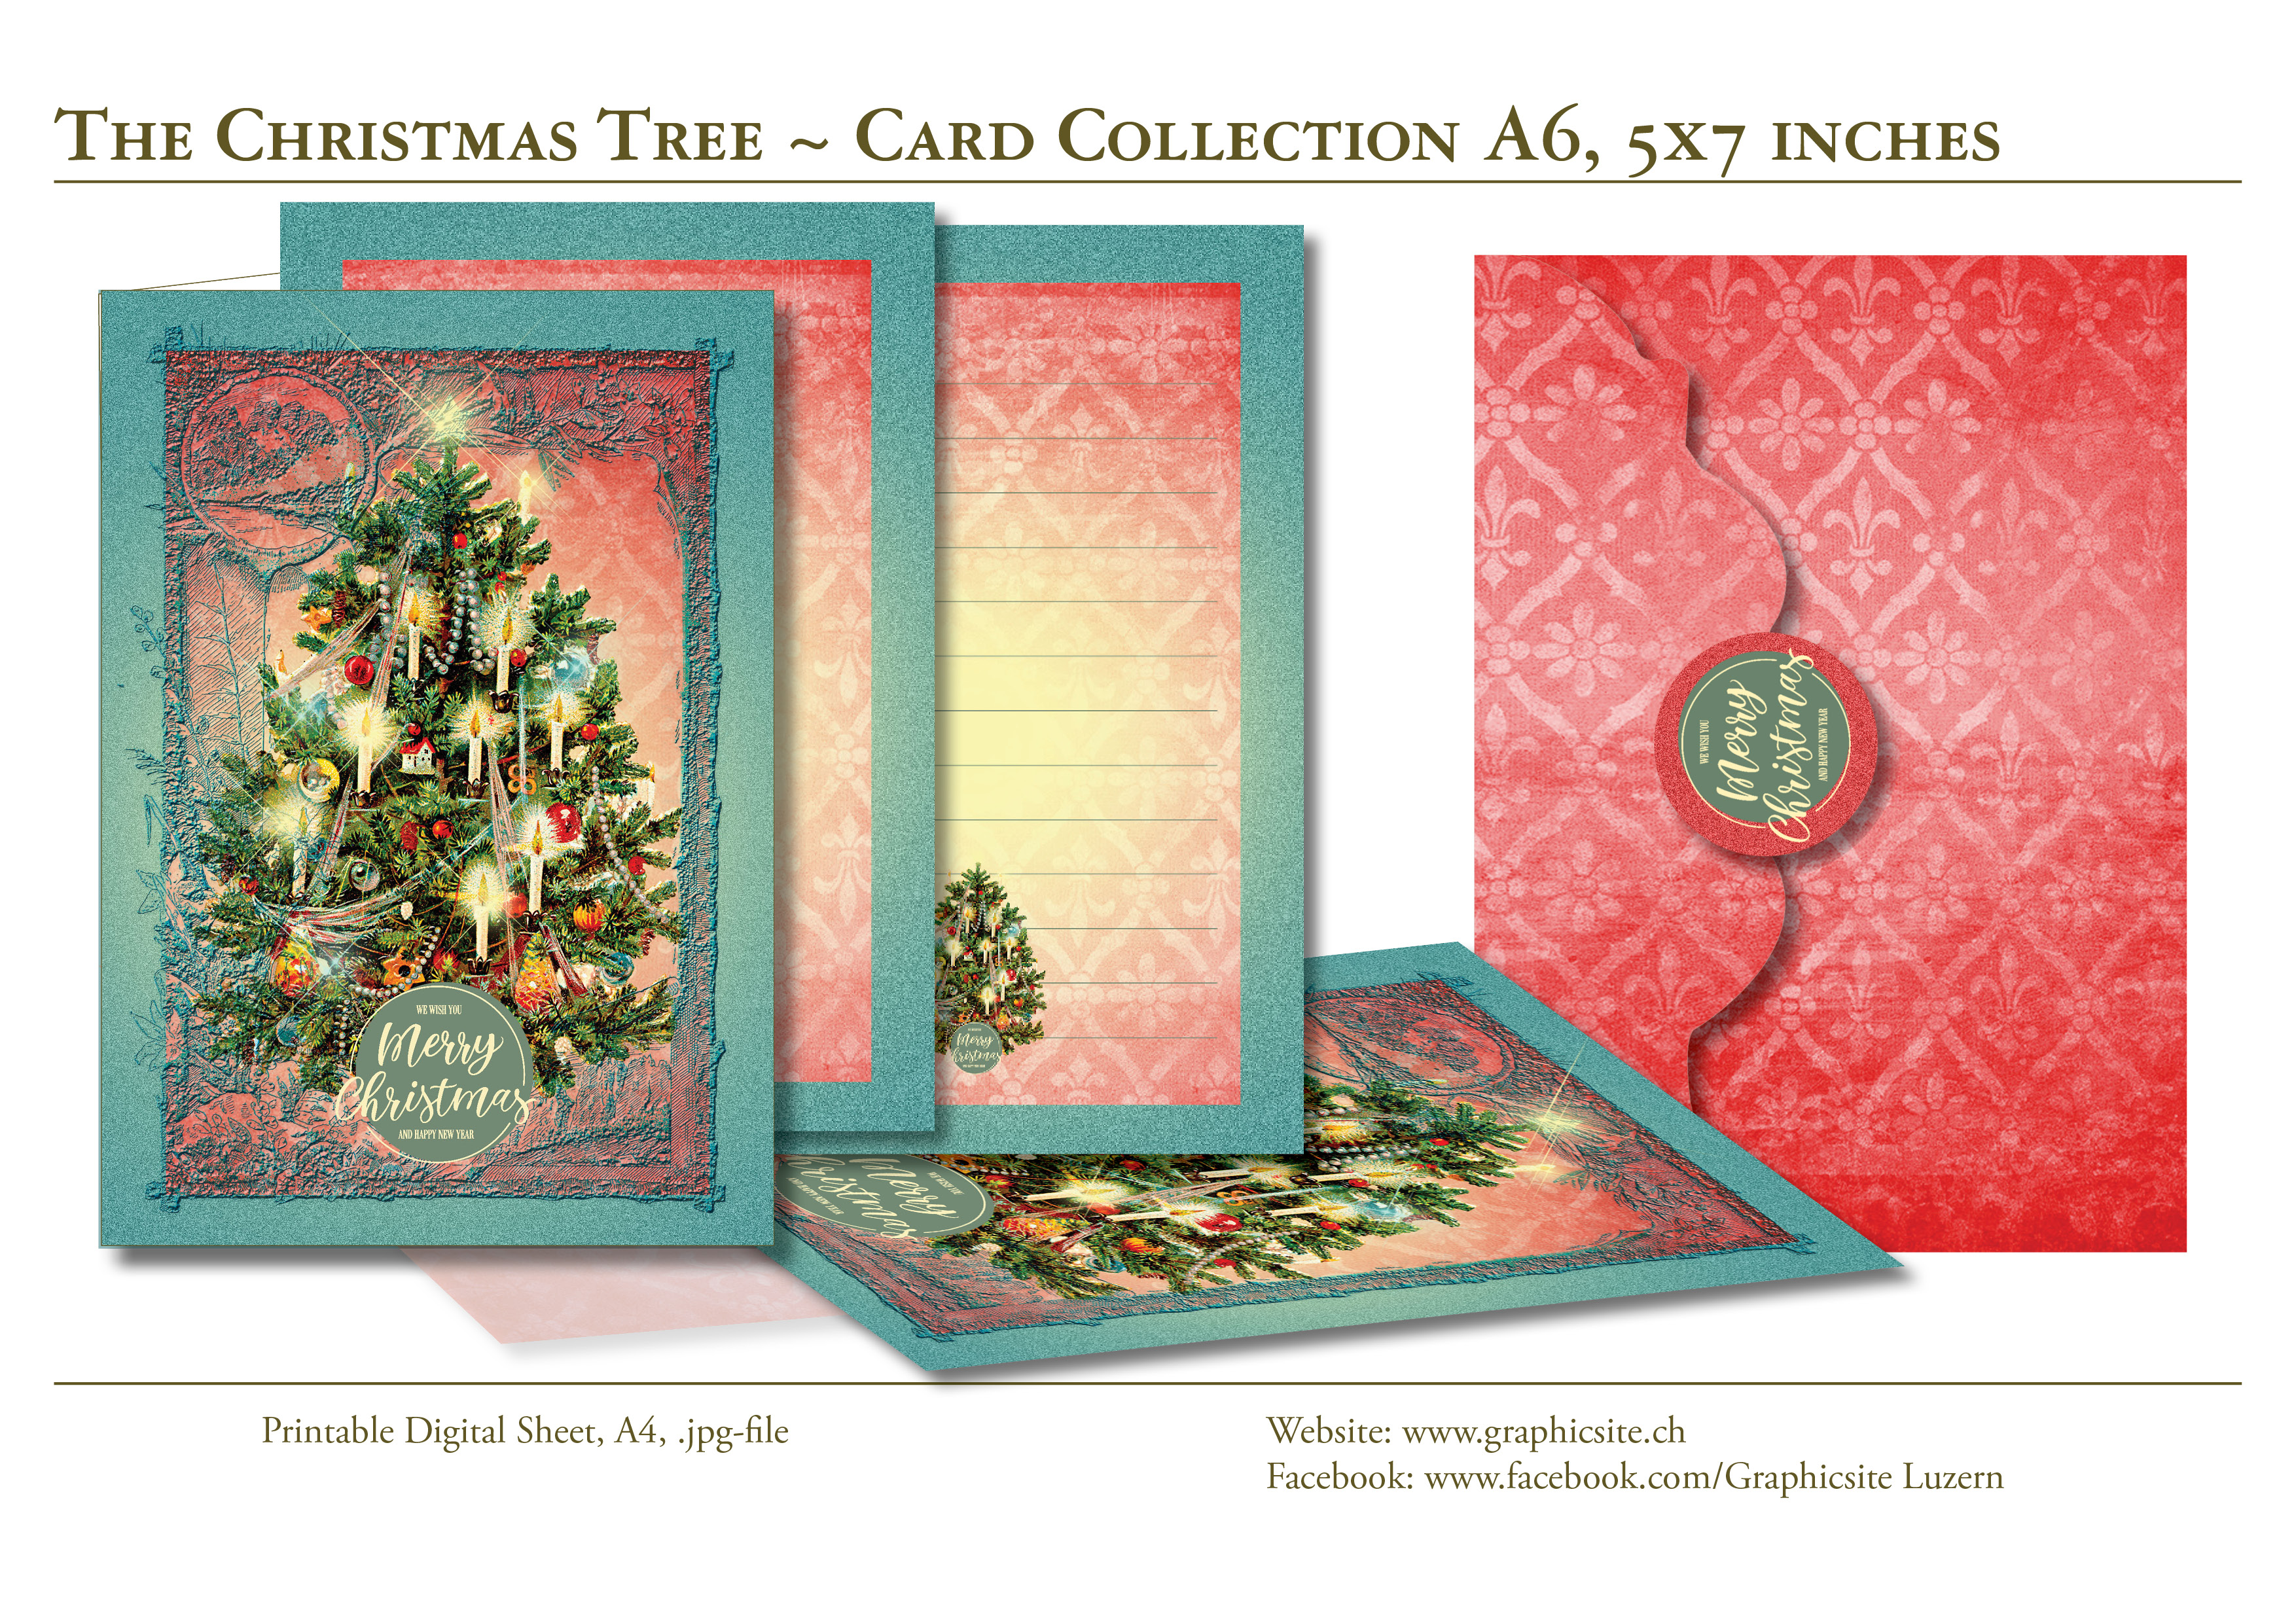 Karten selber drucken - Weihnachtskarten, Grusskarten, Blau, Weiss,  -  Kuvert - #christbaum, #weihnachtsbaum, #weihnachtskarten, #karten, #selber, #drucken, #gestalten, #grusskarten, #A6,  #basteln, #luzern, #schweiz